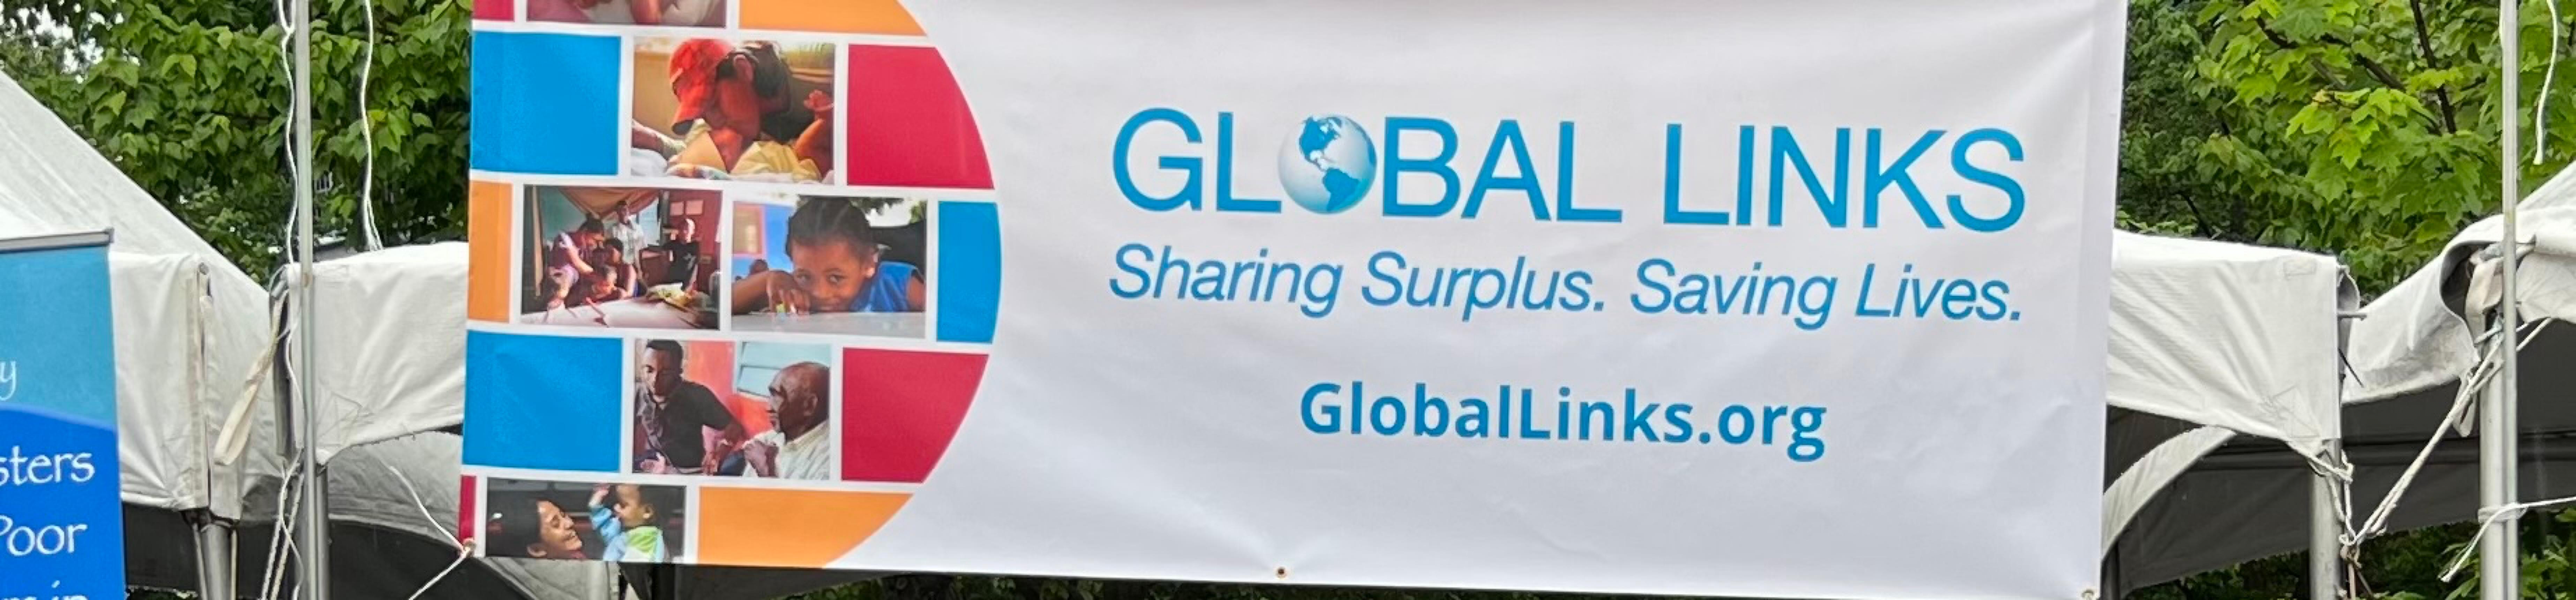 Banner-for-Global-Links-event.jpg